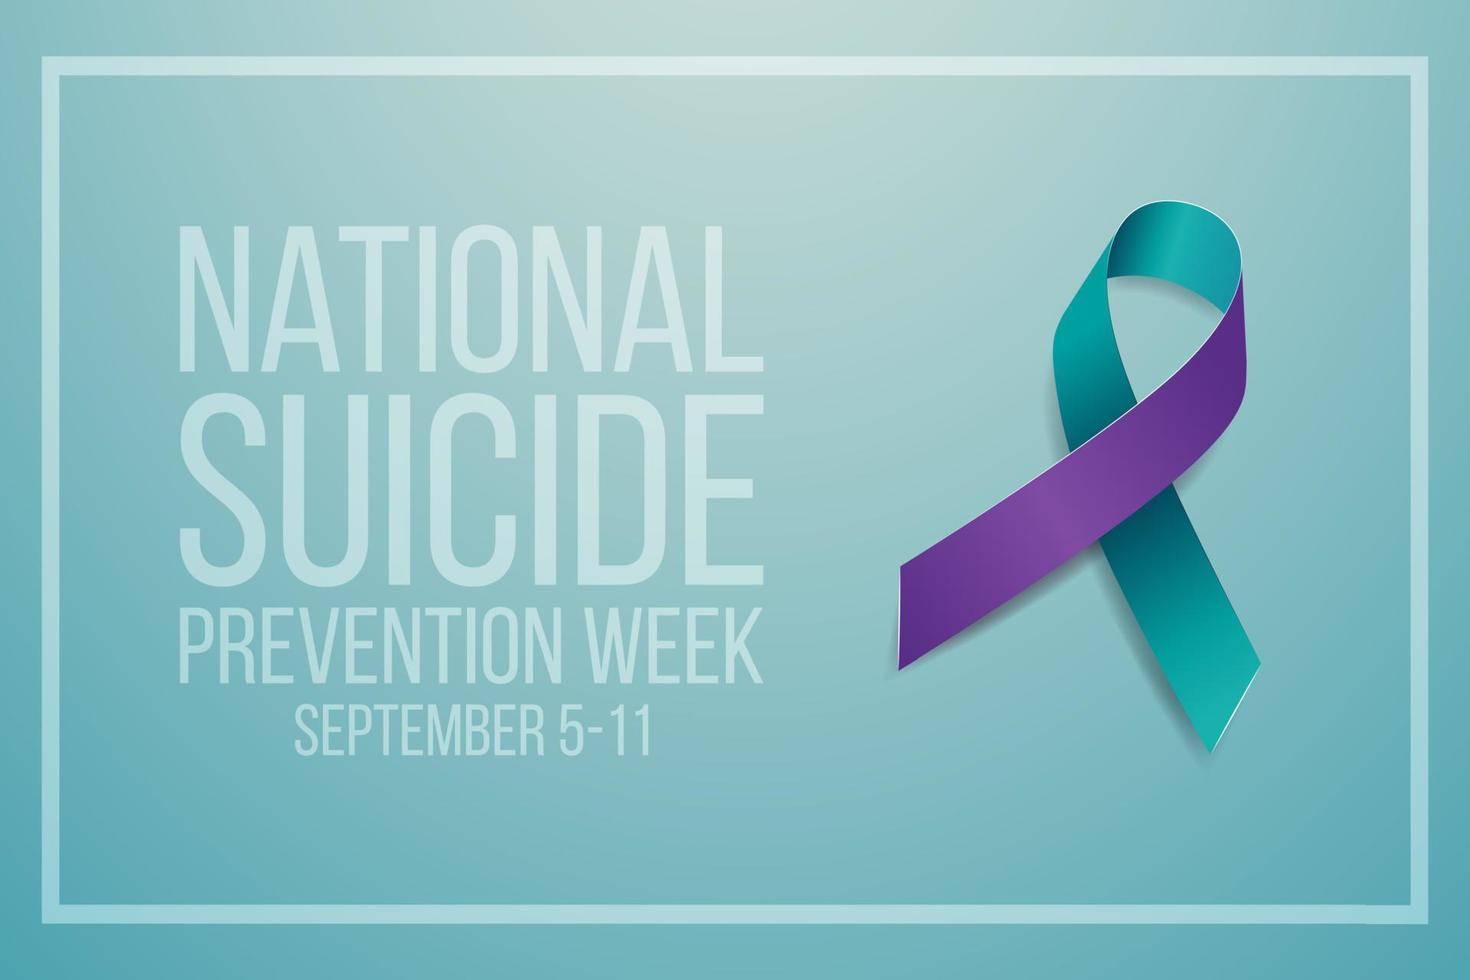 concepto de la semana nacional de prevención del suicidio. banner para el 5-11 de septiembre con texto y conciencia de cinta verde azulado y púrpura. ilustración vectorial vector